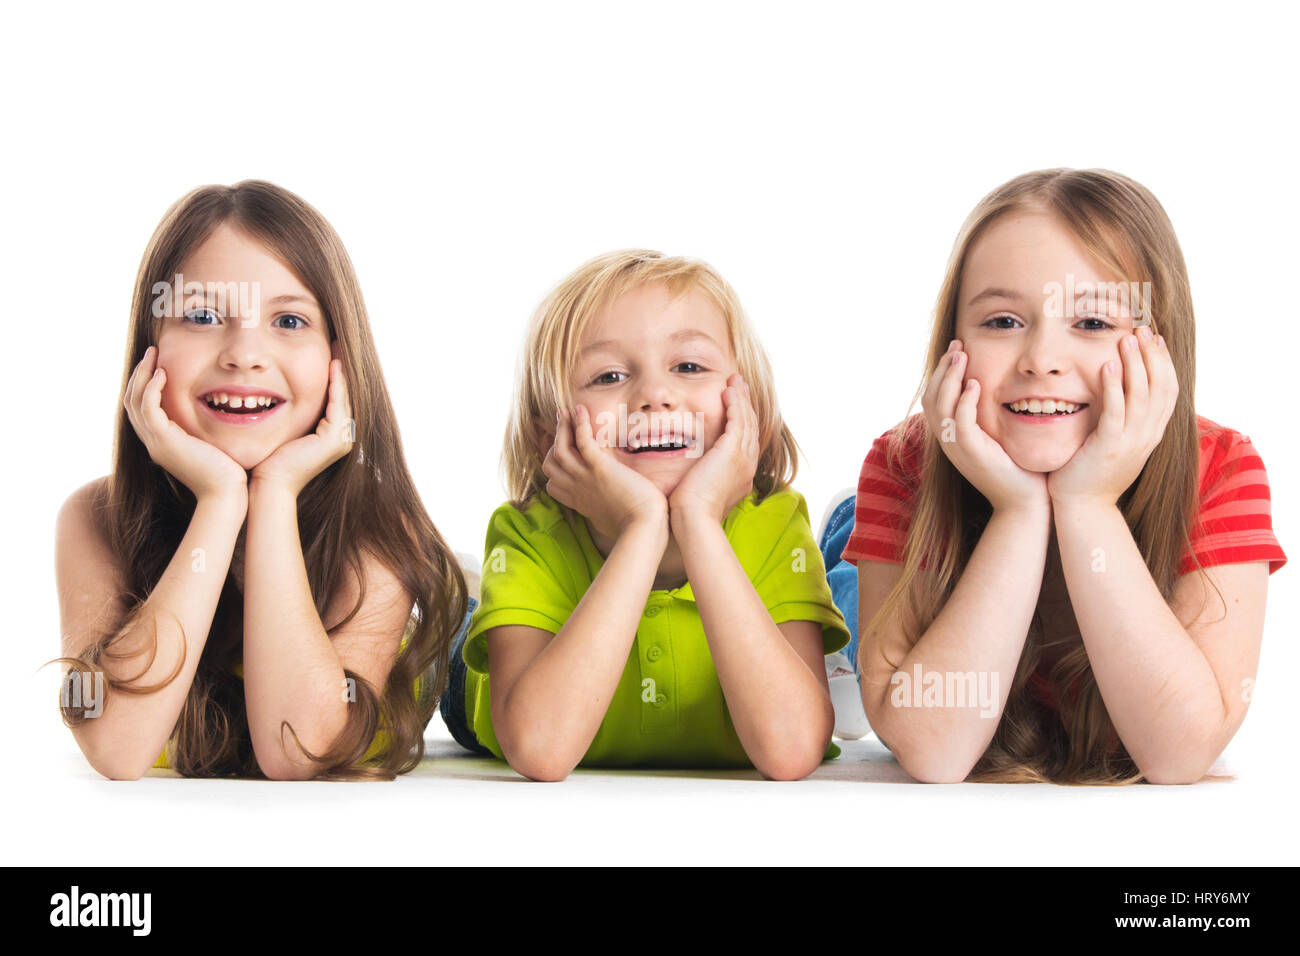 Glücklich lächelnd drei Kinder in bunten Kleidern auf Boden isoliert auf weißem Hintergrund Stockfoto